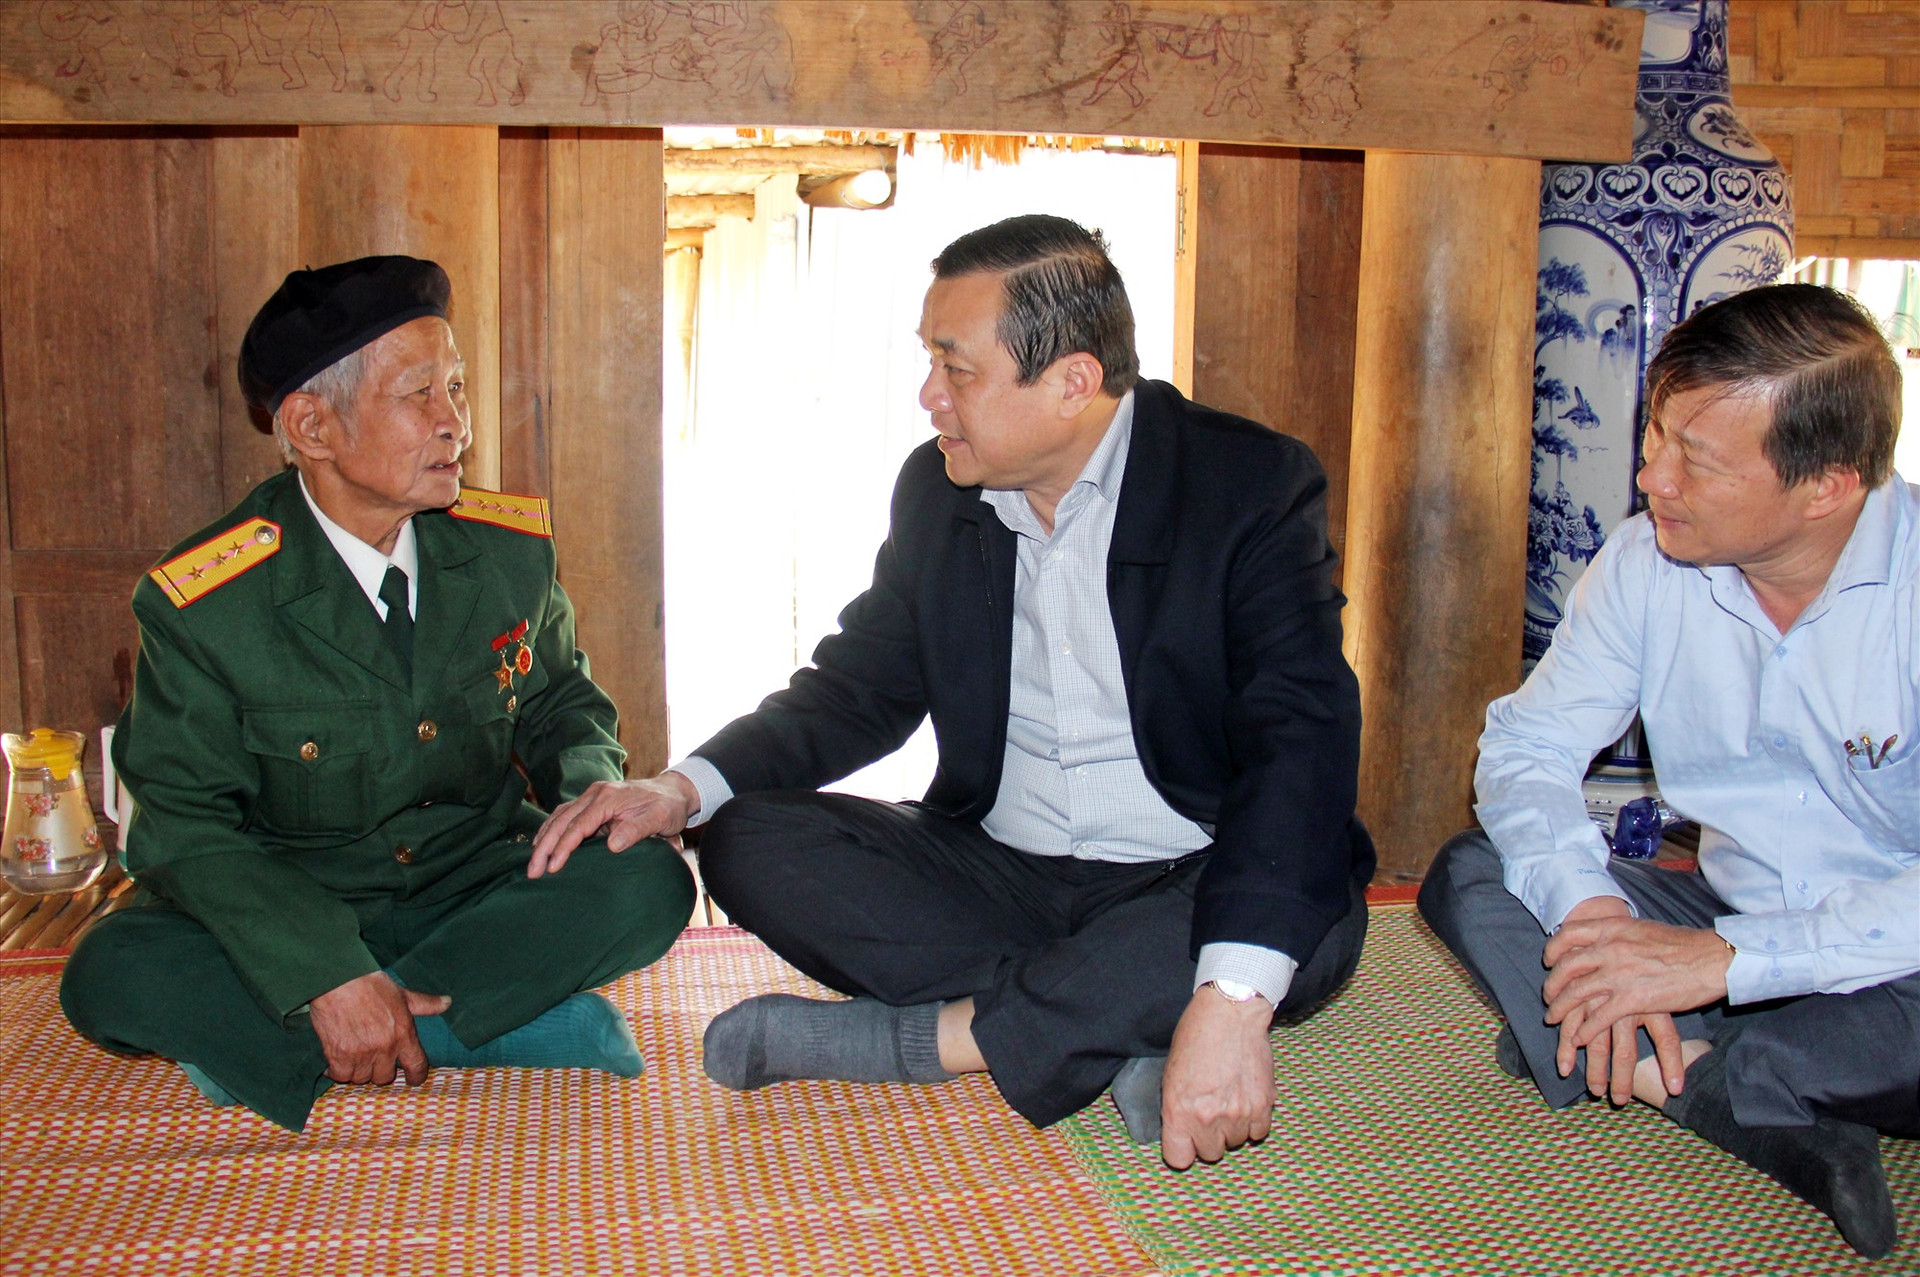 Bí thư Tỉnh ủy Phan Việt Cường thăm hỏi, động viên già làng tiếp tục phát huy vai trò của mình trong việc nêu gương cho cộng đồng miền núi.